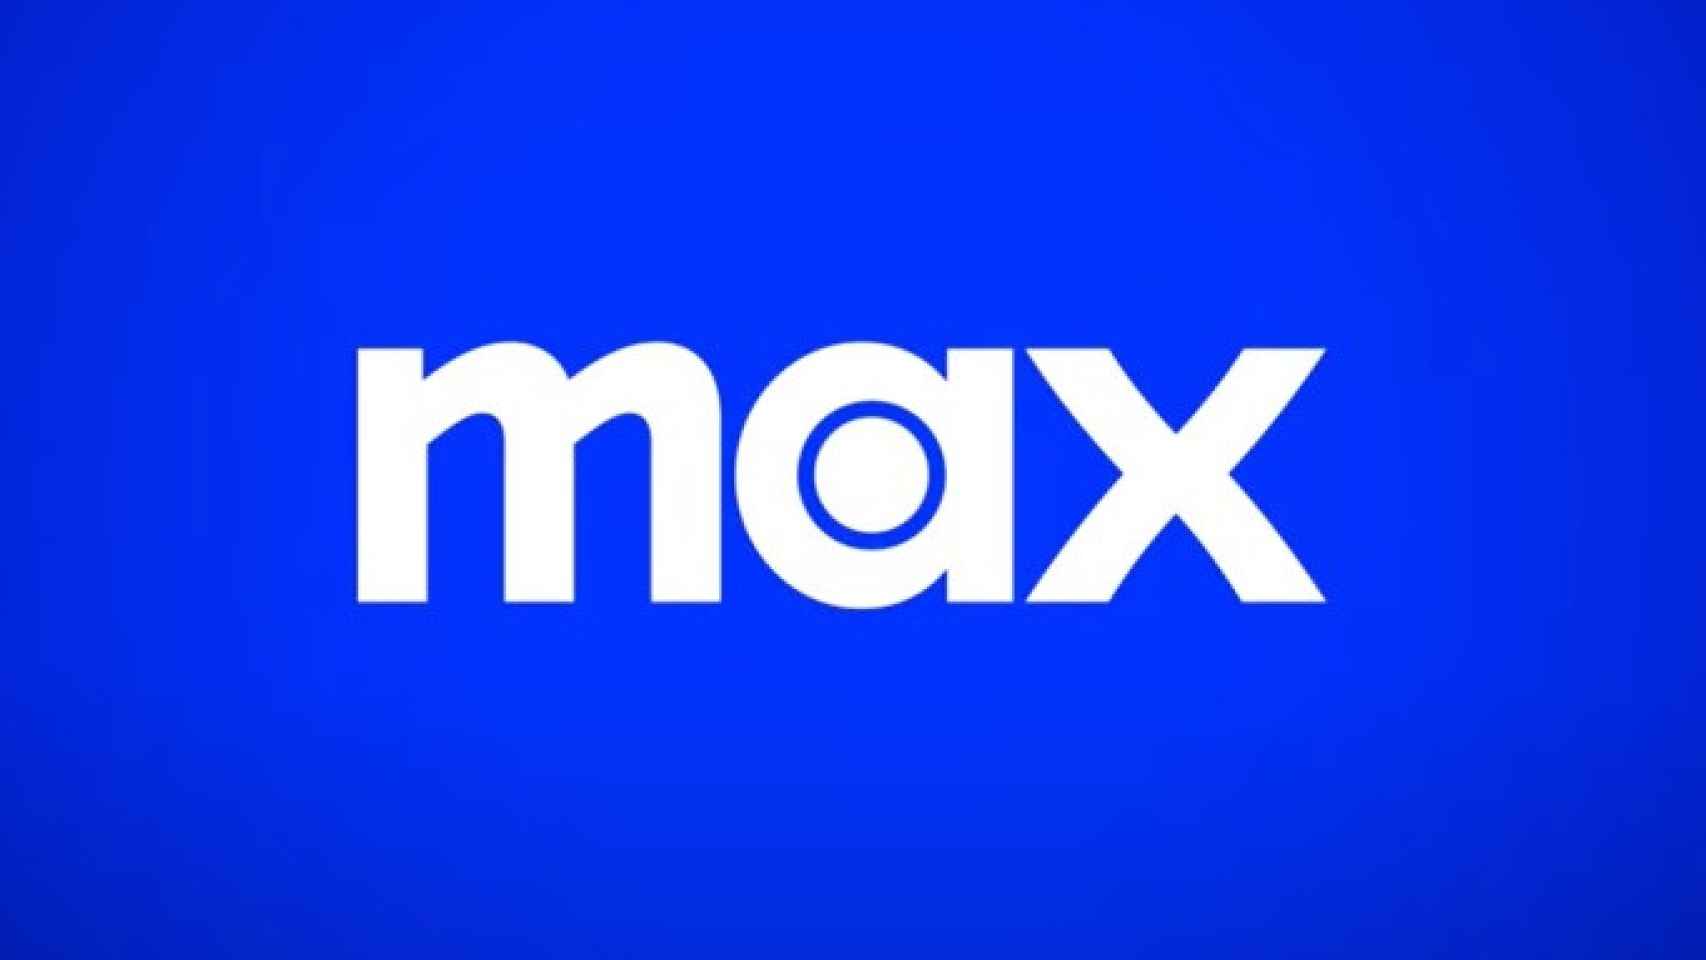 Logo de Max, el nuevo servicio que sustituye a HBO Max.